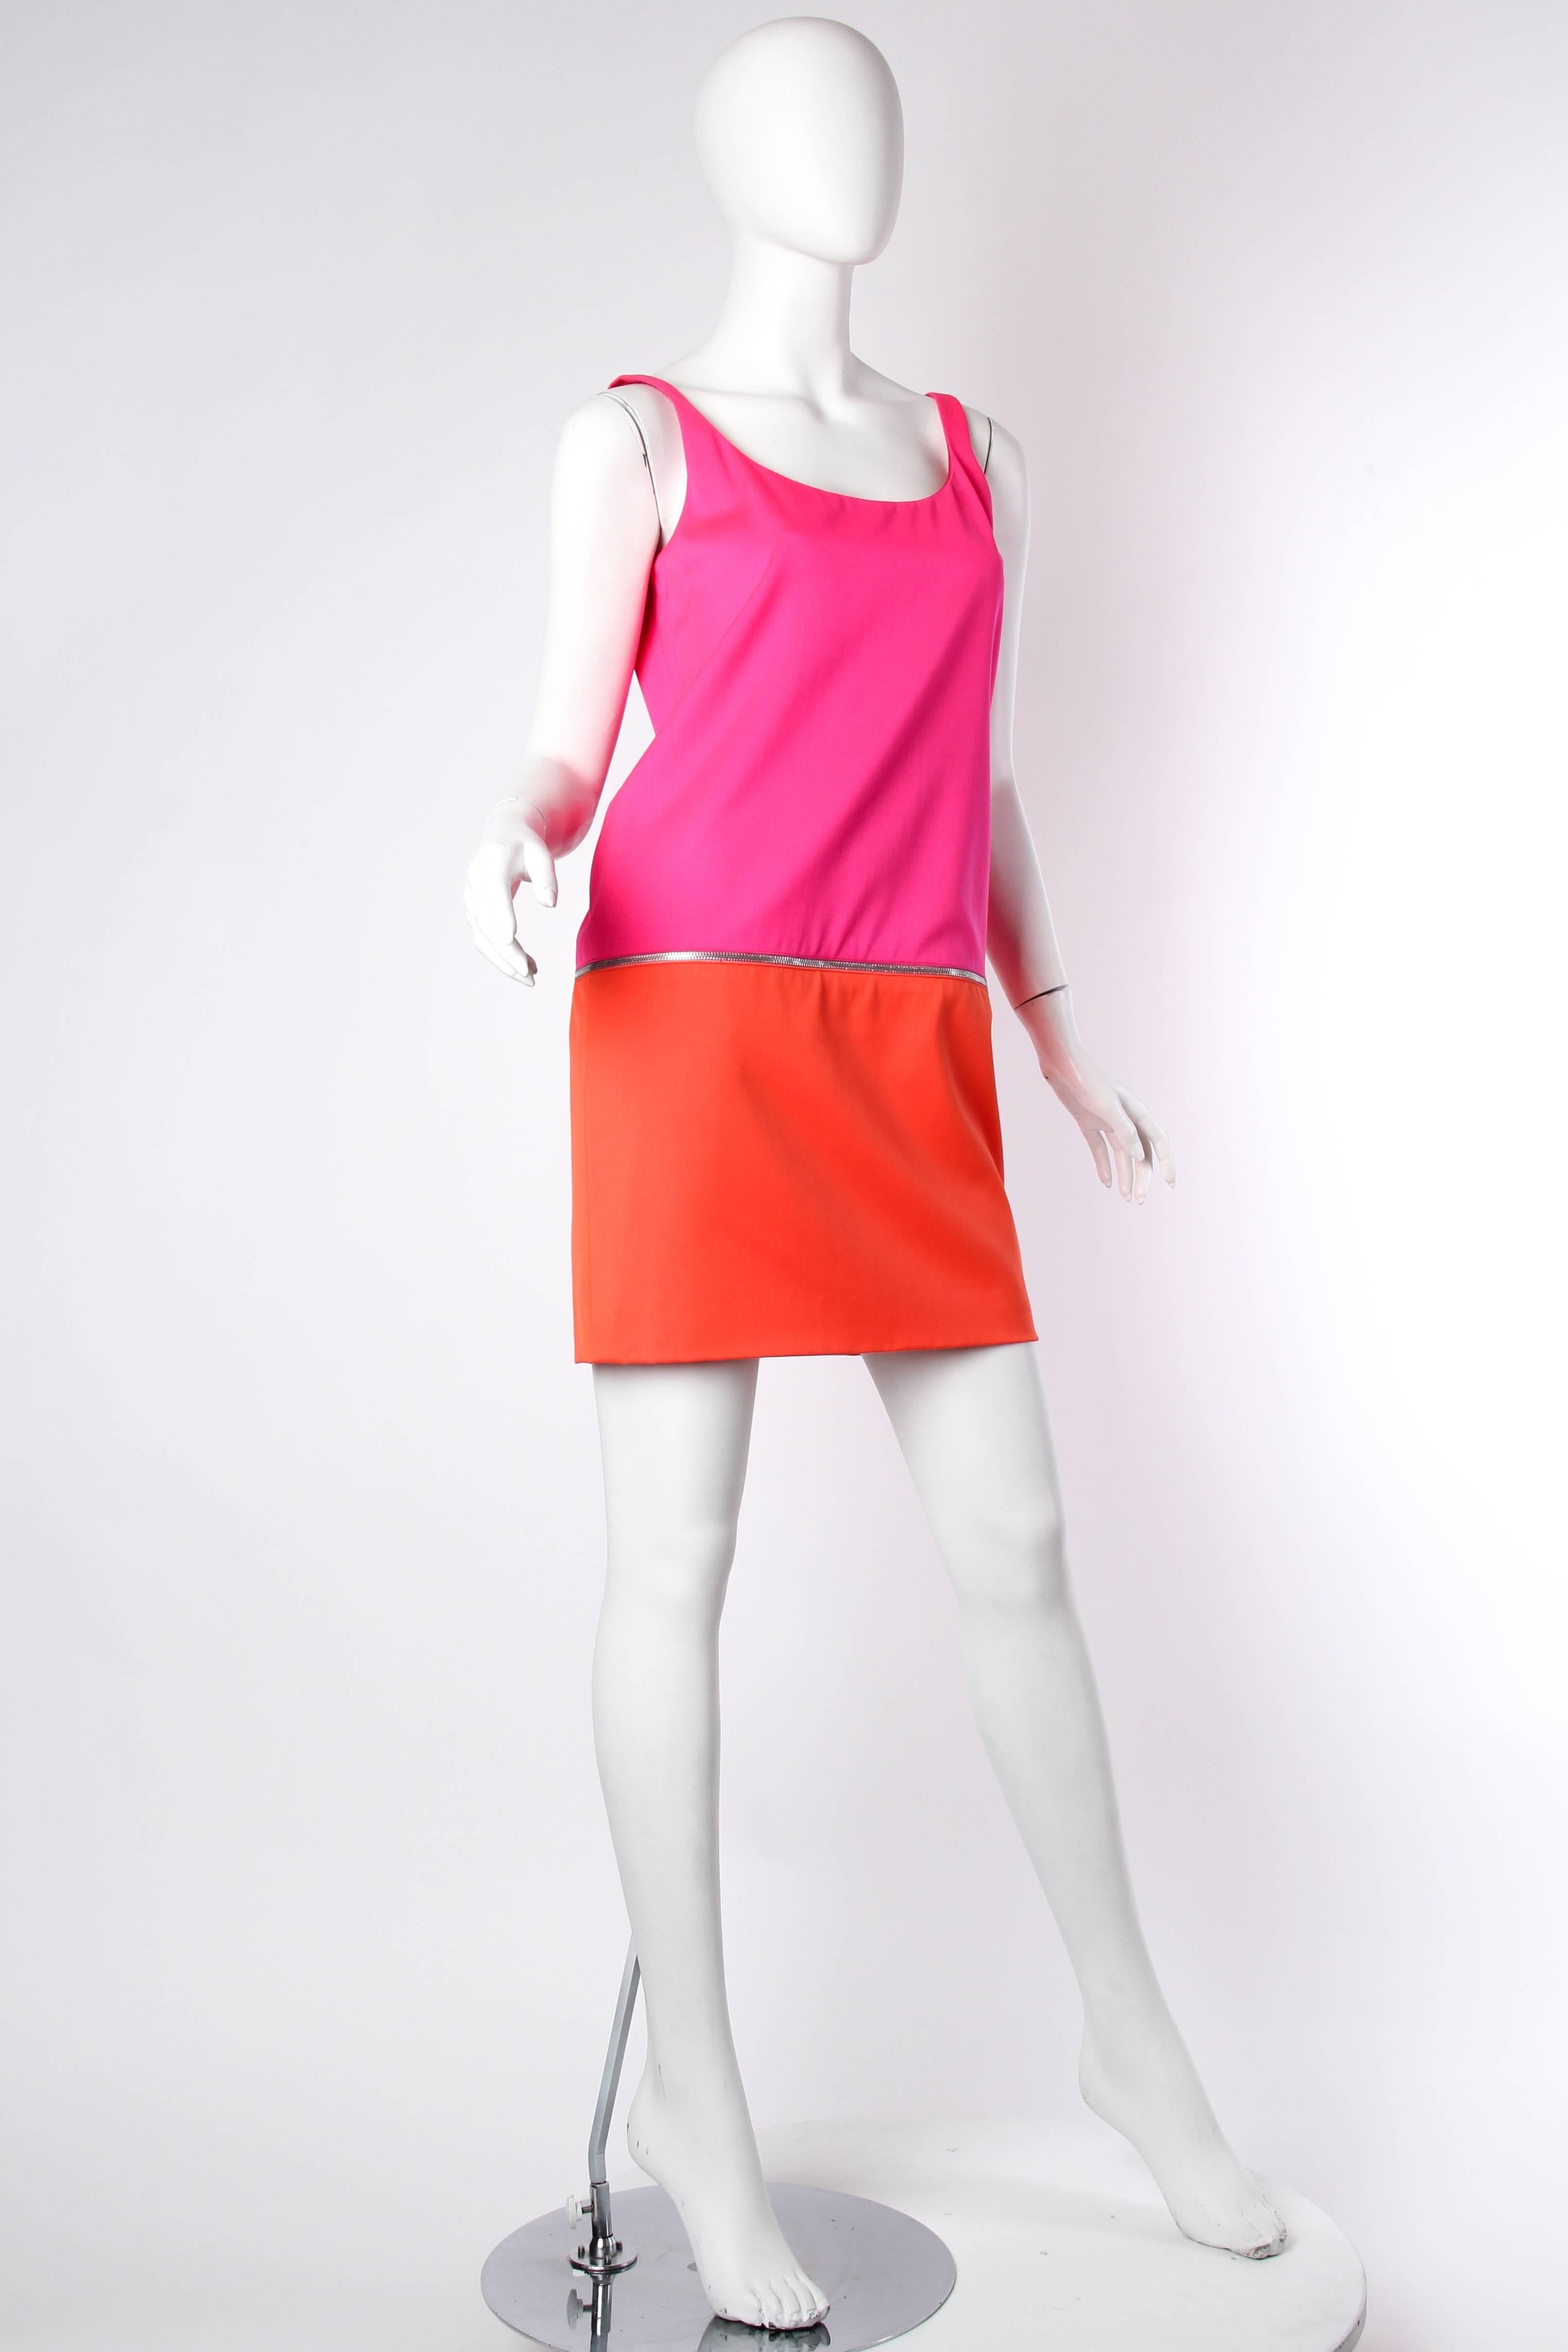 Pink Stephen Sprouse 1980s Ss85 Mod Zipper Dress